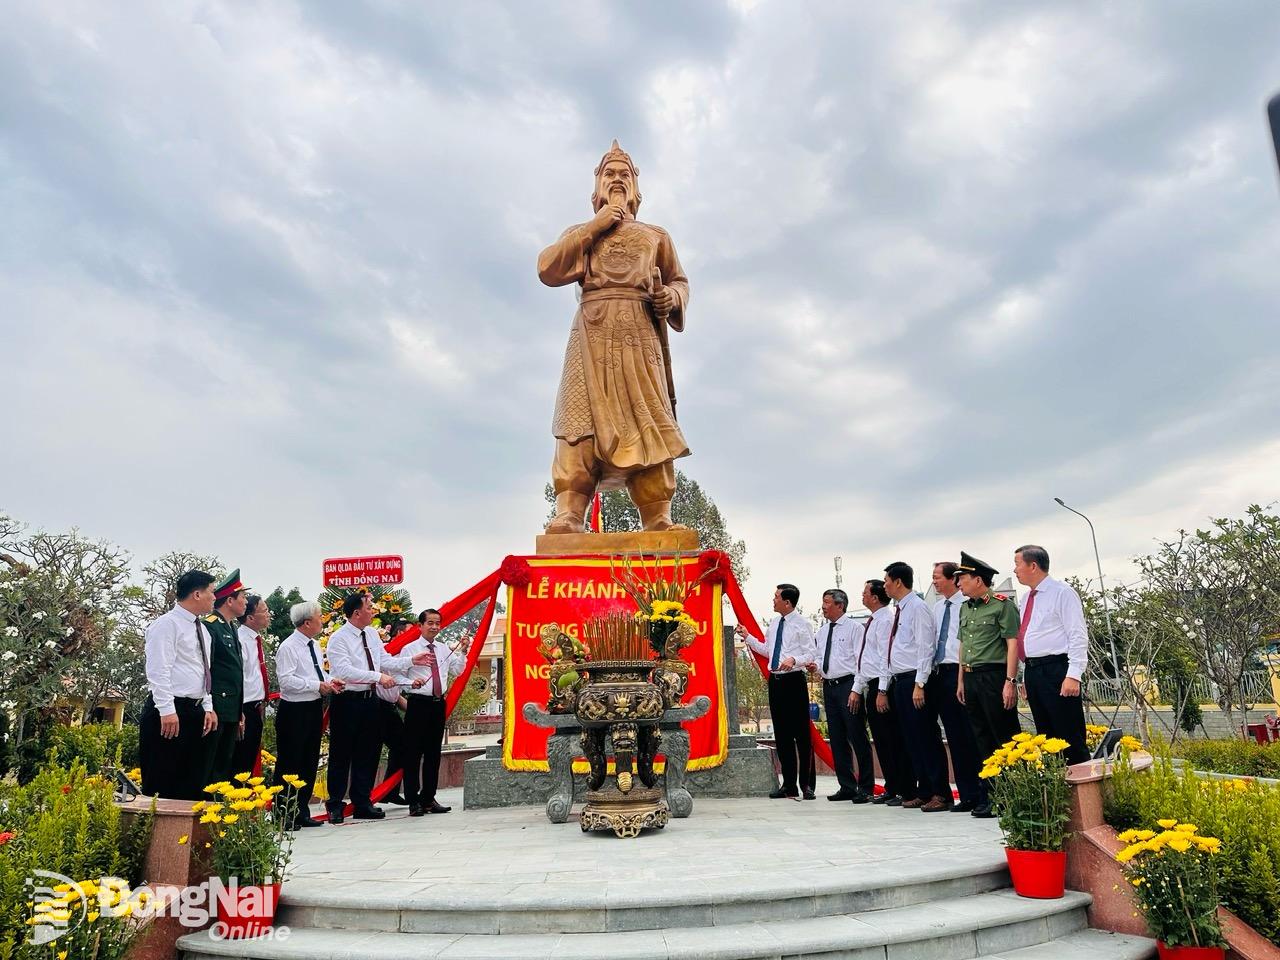 Bí thư Tỉnh ủy Nguyễn Hồng Lĩnh cùng các đại biểu kéo dây băng đỏ khánh thành tượng đài Lễ thành hầu Nguyễn Hữu Cảnh